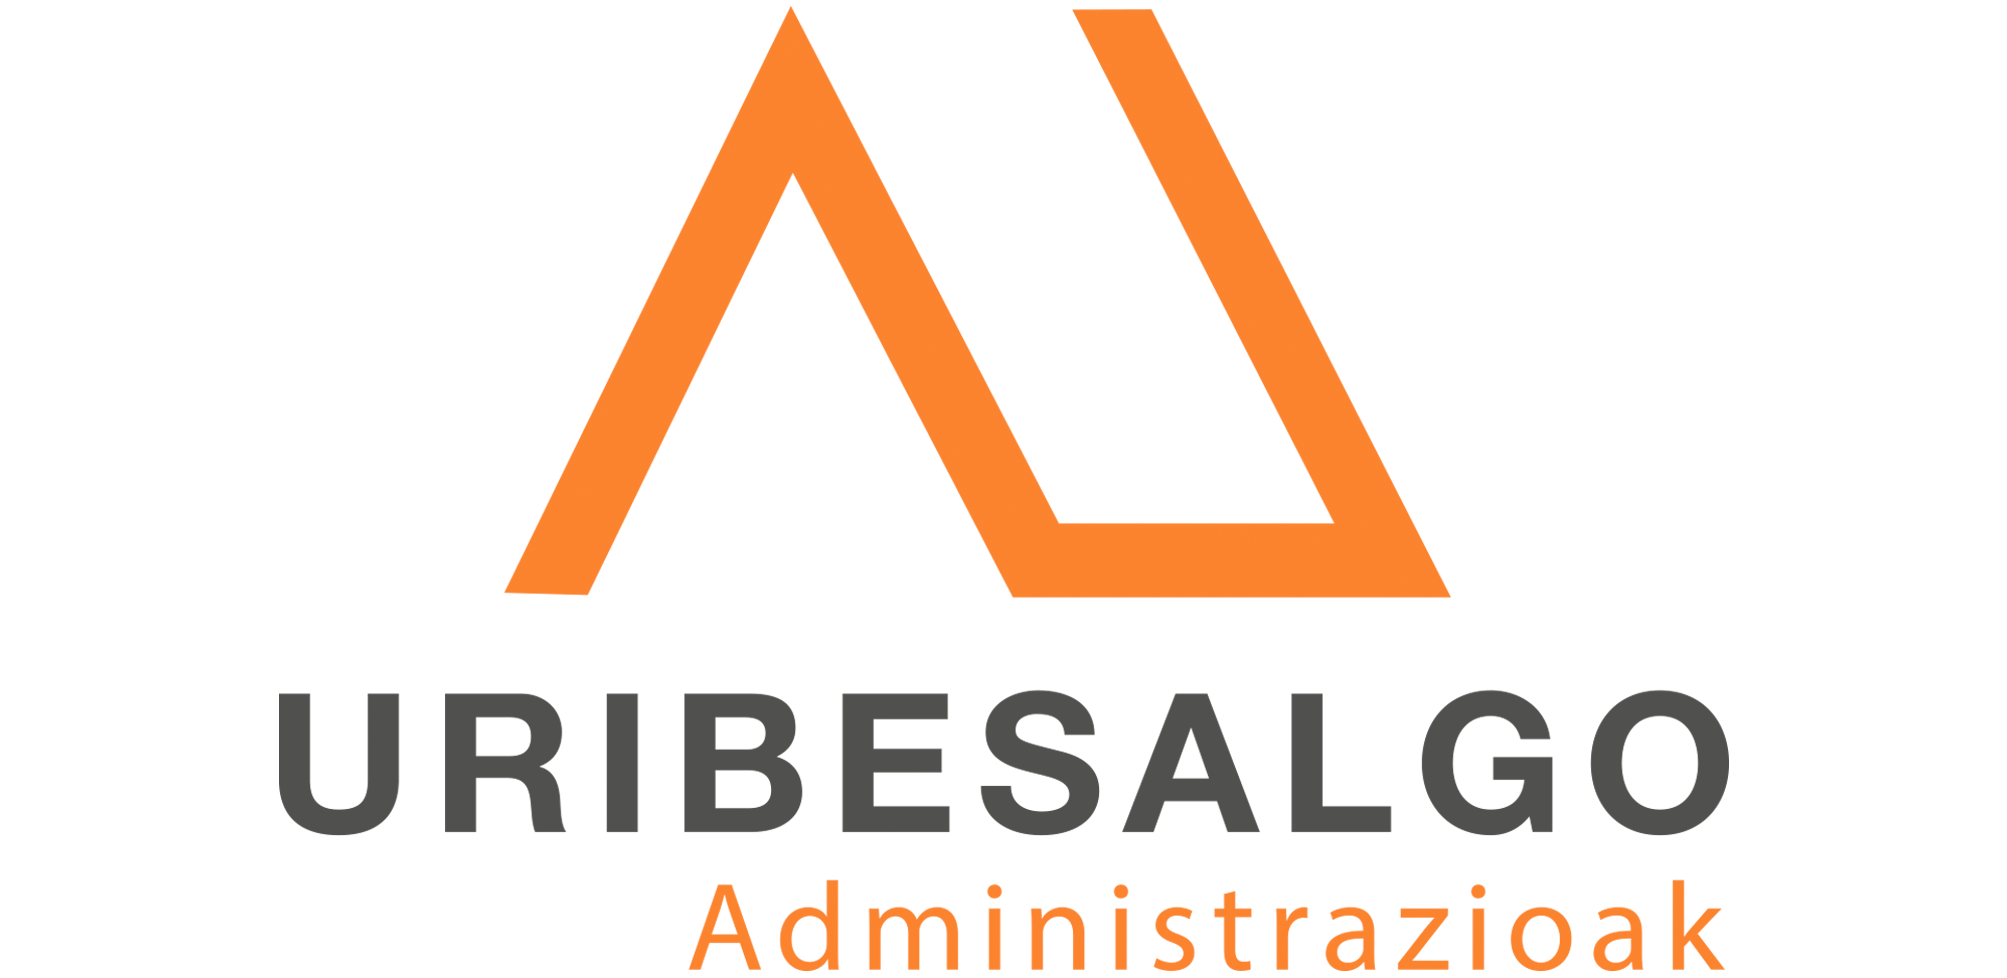 logotipo_uribesalgo